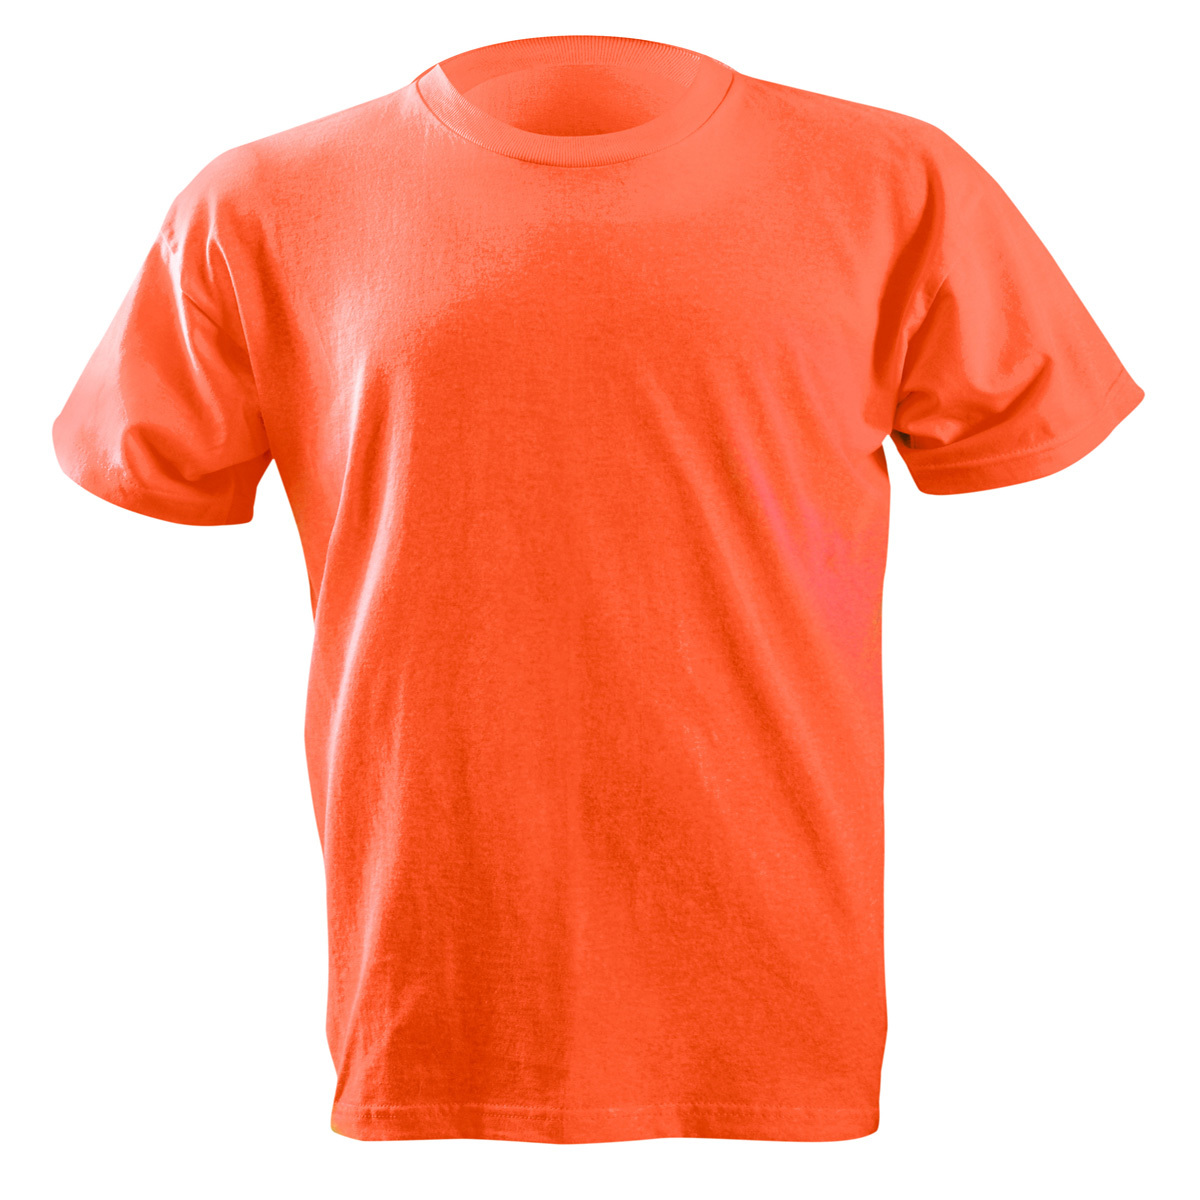 OccuNomix Large Orange 6 Ounce Cotton T-Shirt